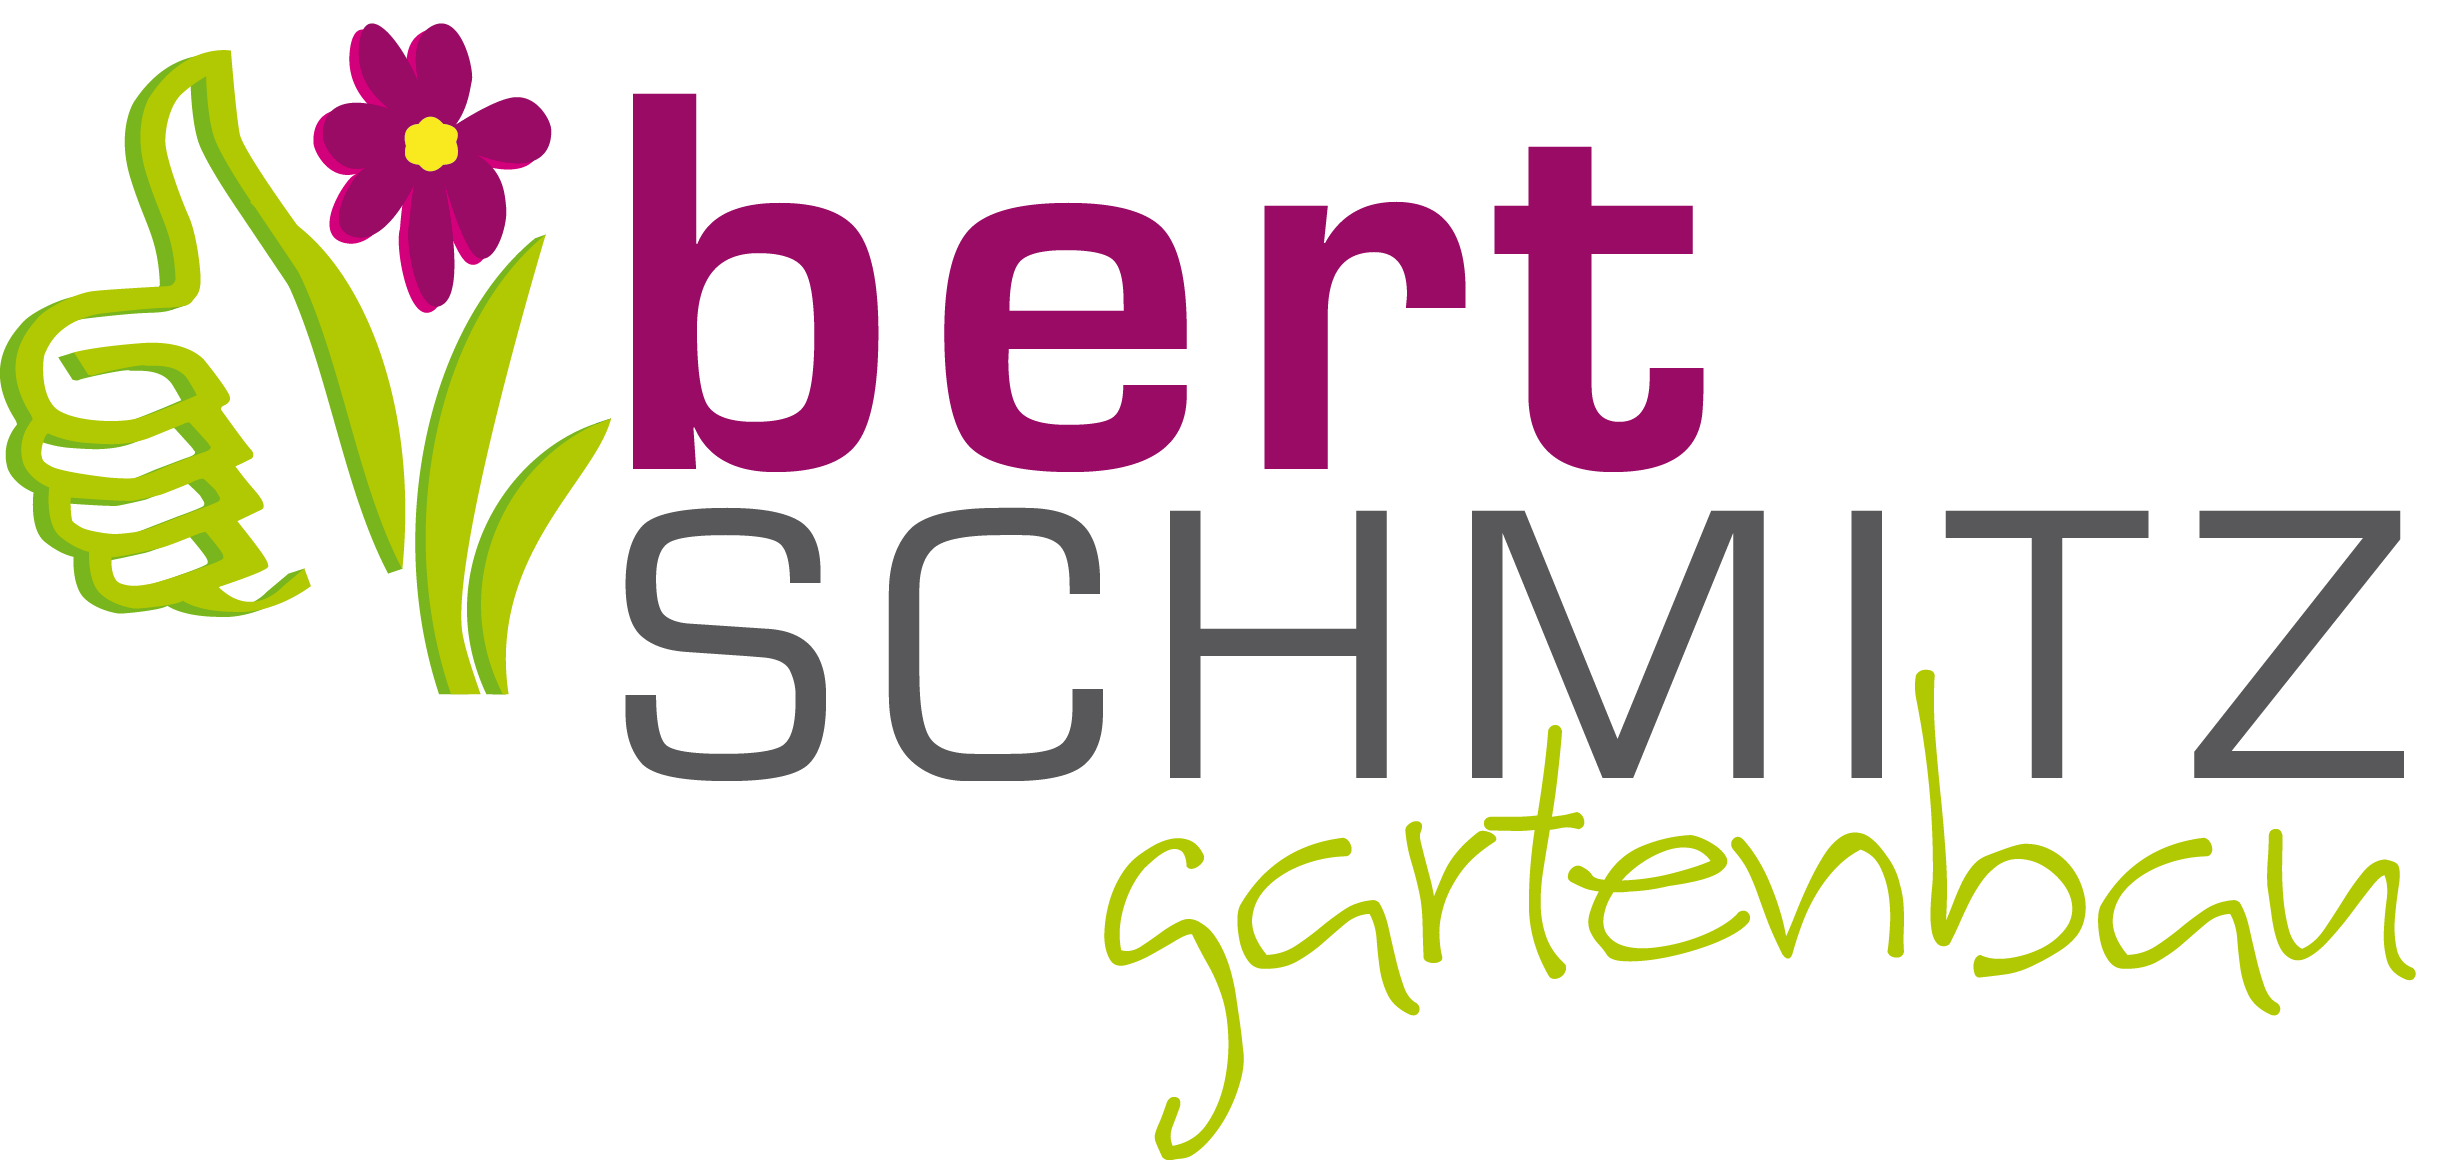 Bert Schmitz